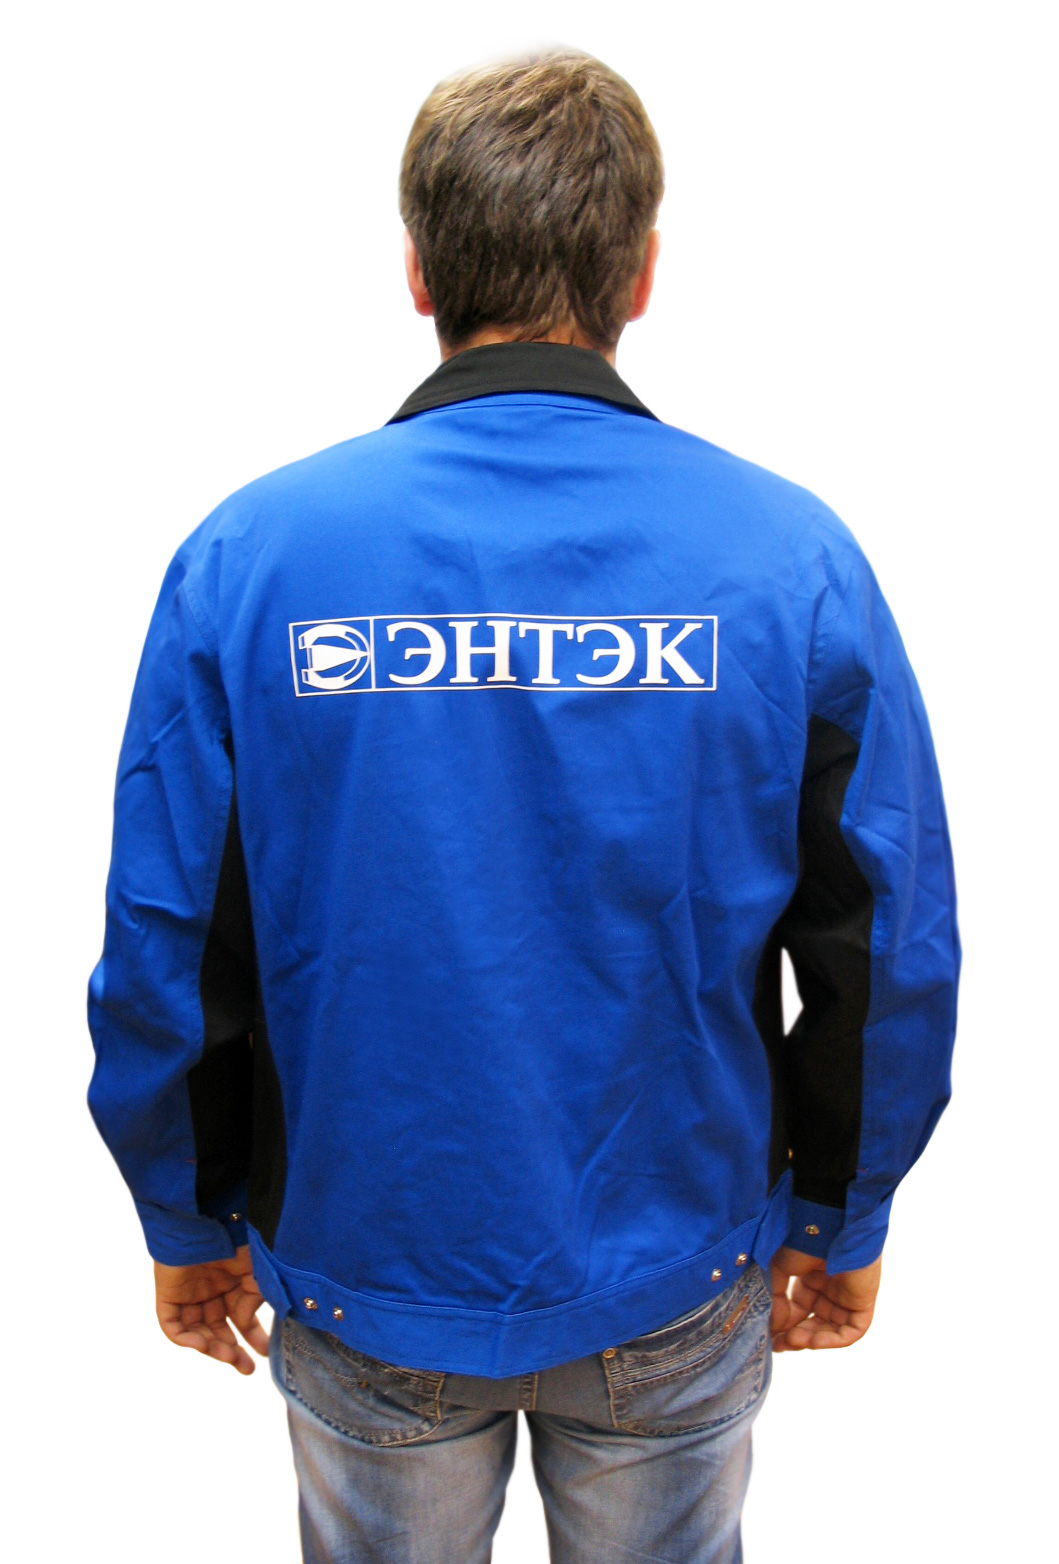 Рабочей куртки СПЕЦ-Авангард вид сзади, фрагмент с логотипом компании ЭНТЭК